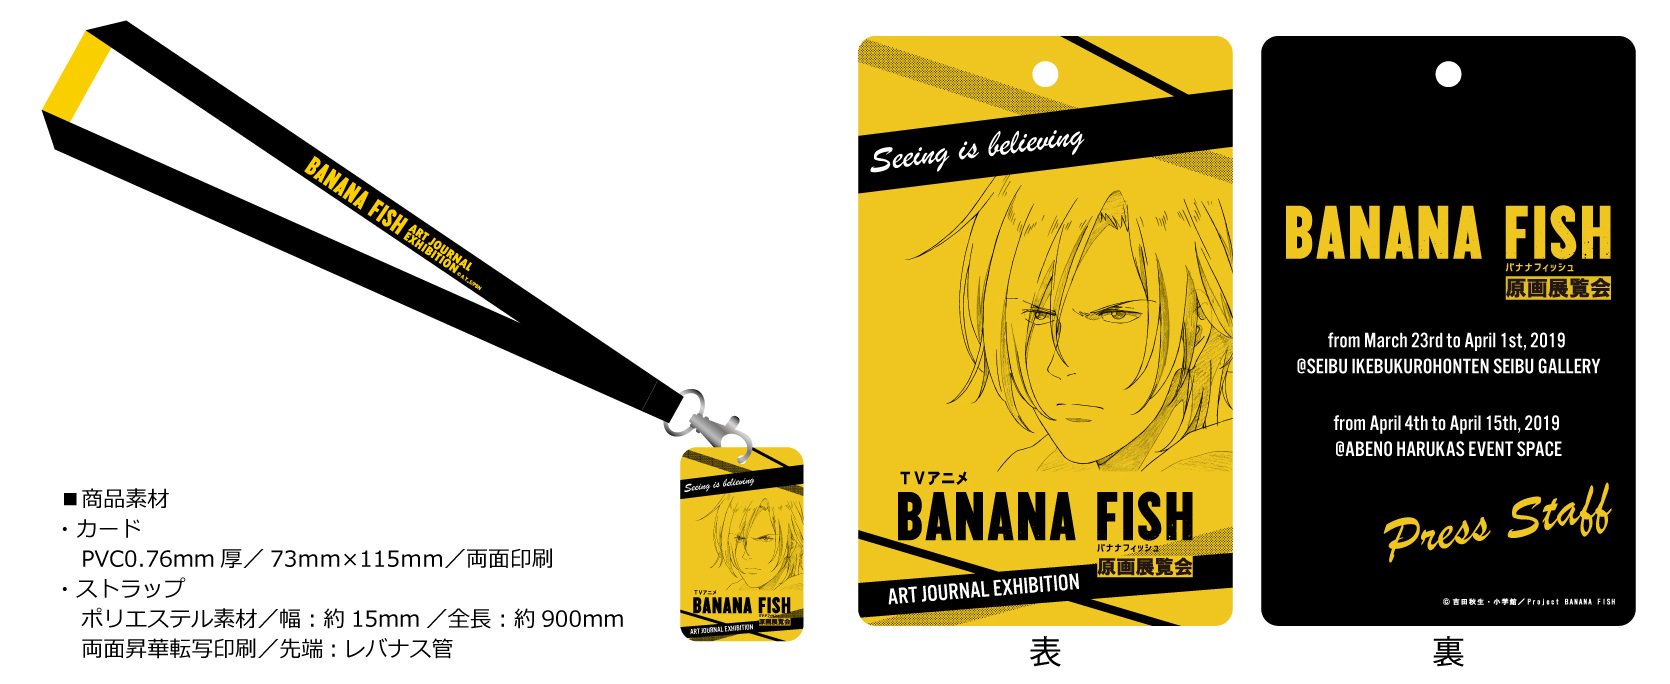 TVアニメ「BANANA FISH」原画展覧会 on Twitter: "TVアニメ「BANANA FISH」原画展覧会 限定グッズチケットの